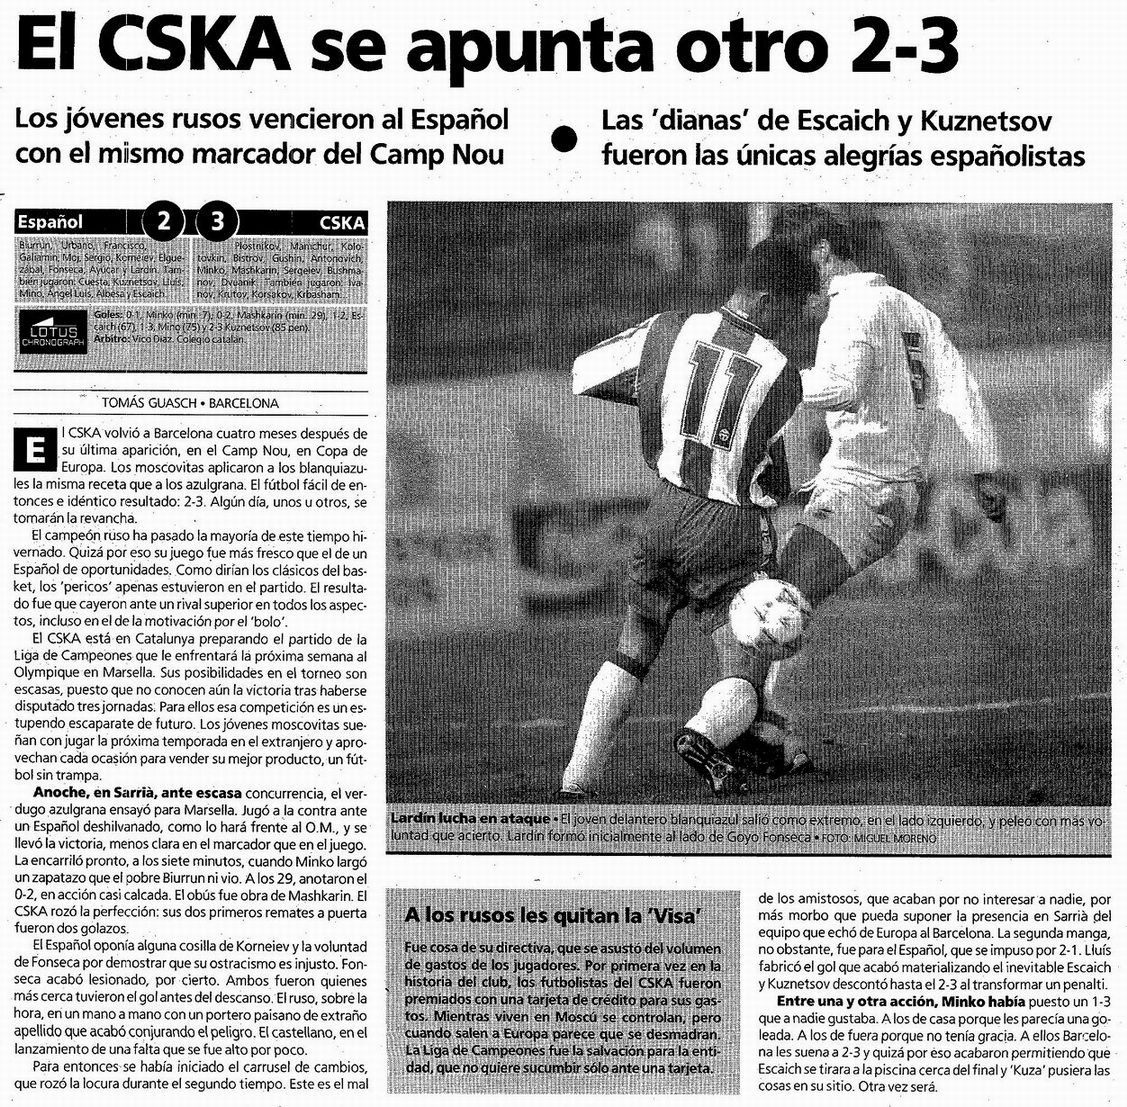 1993-03-11.Espanyol-CSKA